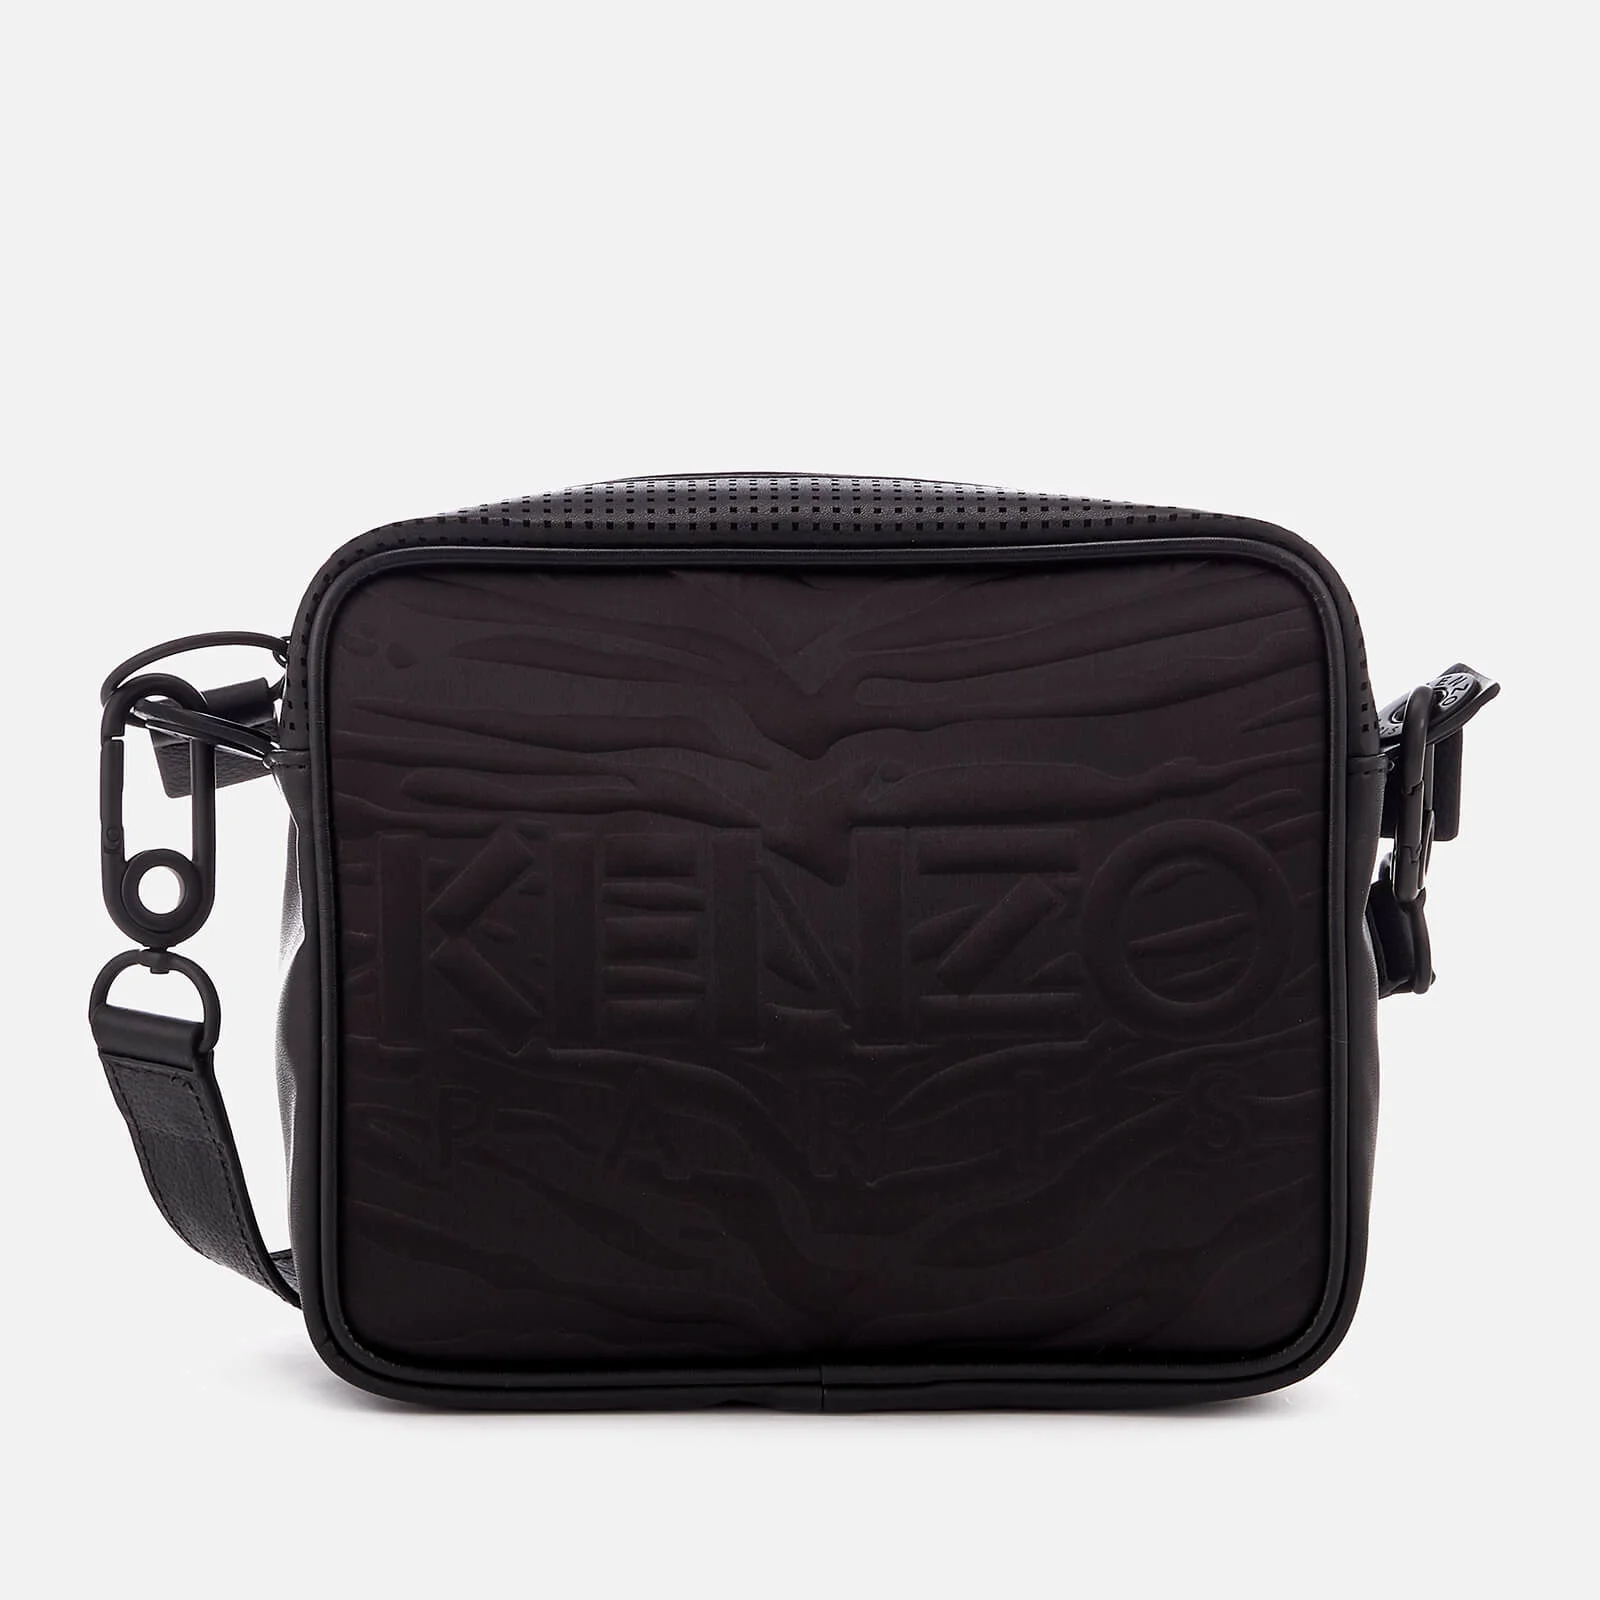 KENZO Women's Kanvas Camera Bag - Black Image 1